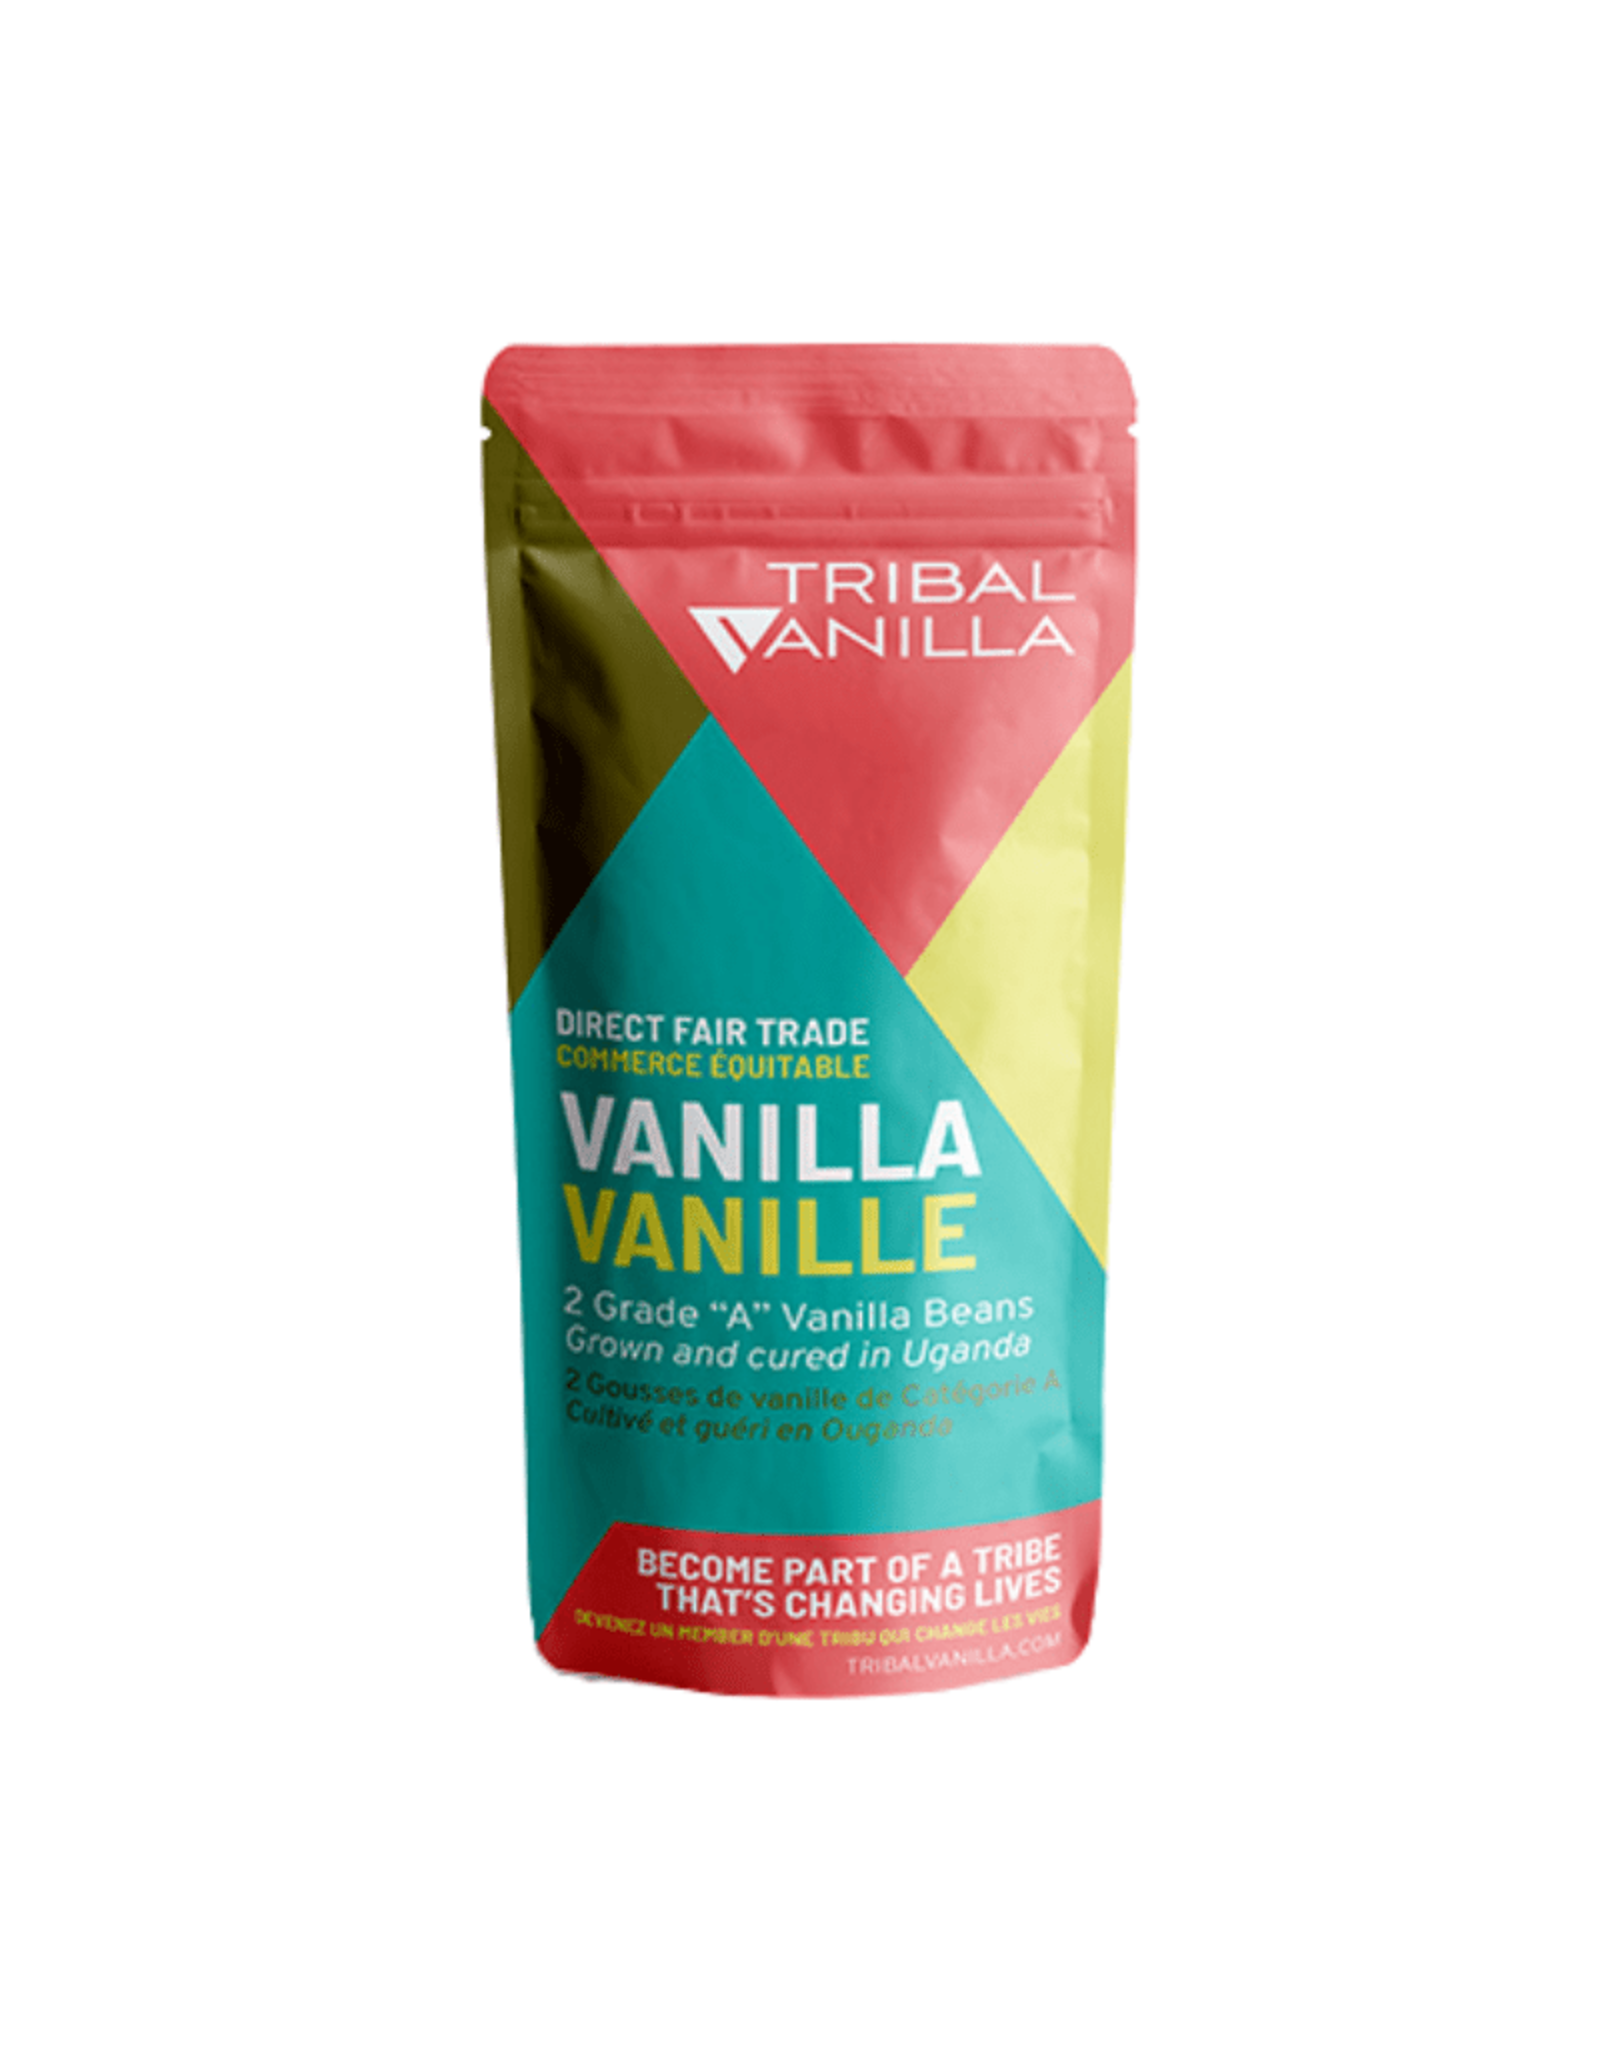 Uganda Tribal Vanilla - 2 Beans, Uganda